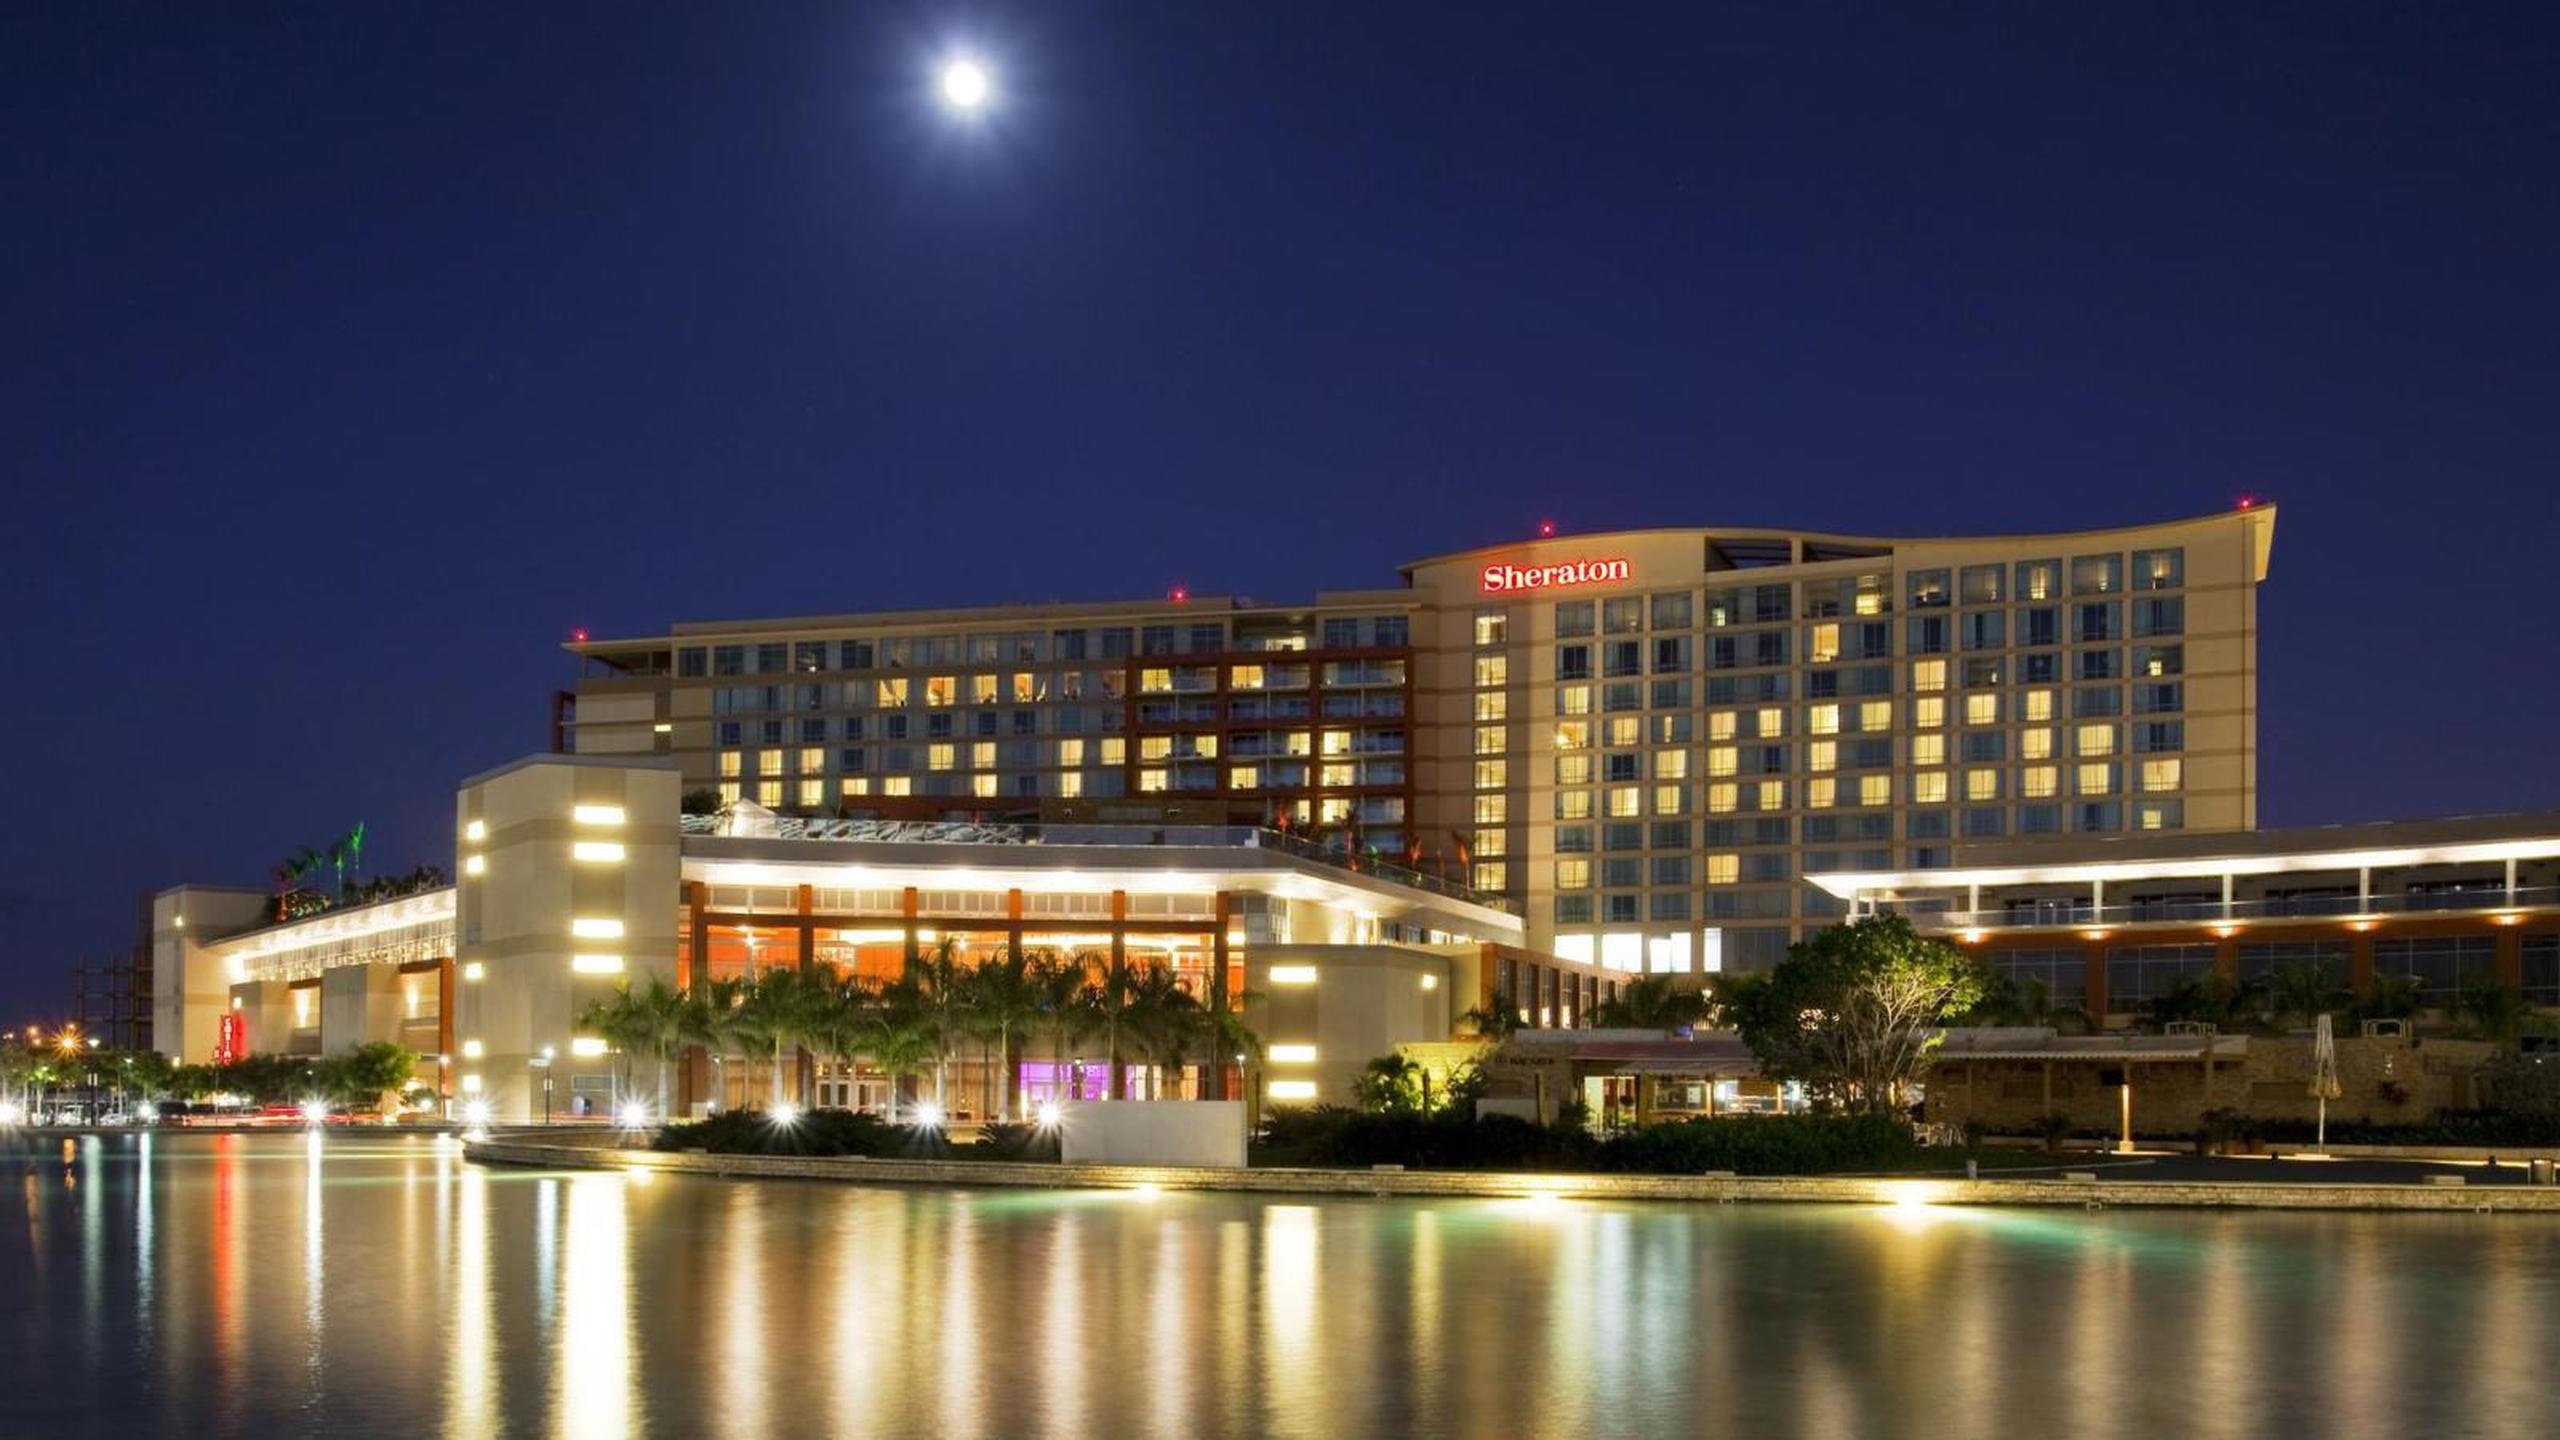 Vista del hotel Sheraton en el Centro de Convenciones. (GFR Media)